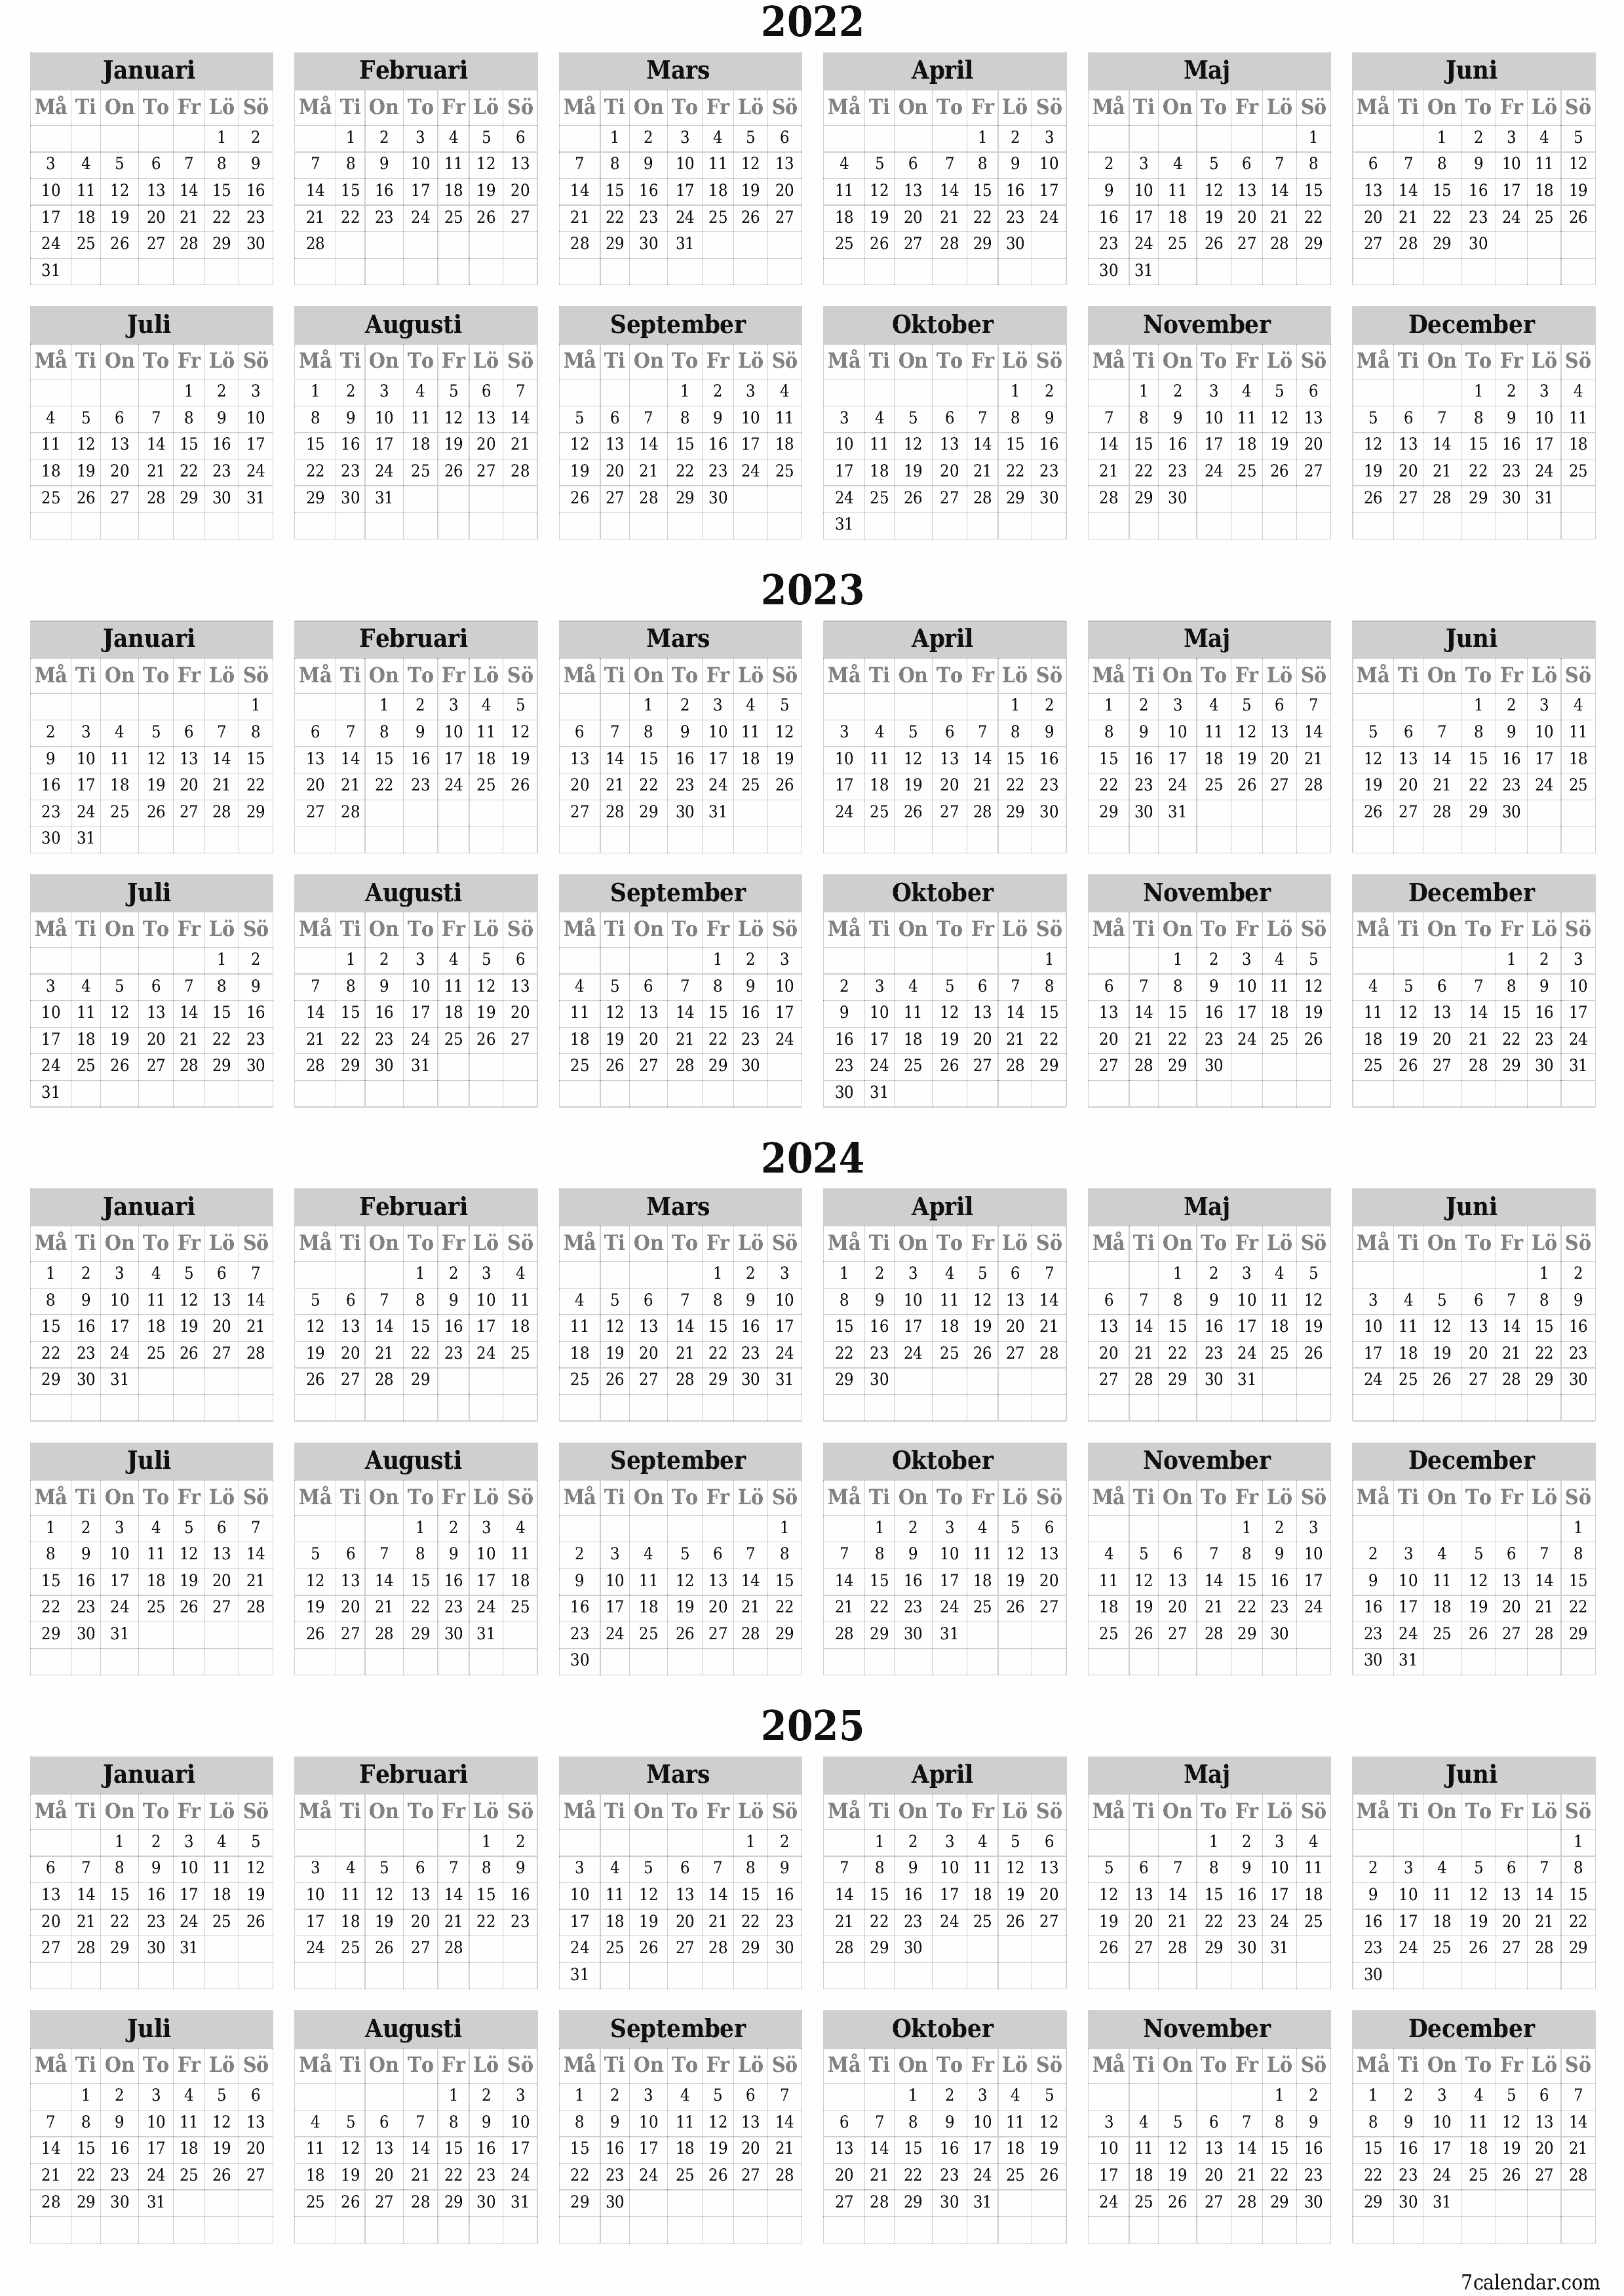 Tom årskalender för år 2022, 2023, 2024, 2025 spara och skriv ut till PDF PNG Swedish - 7calendar.com